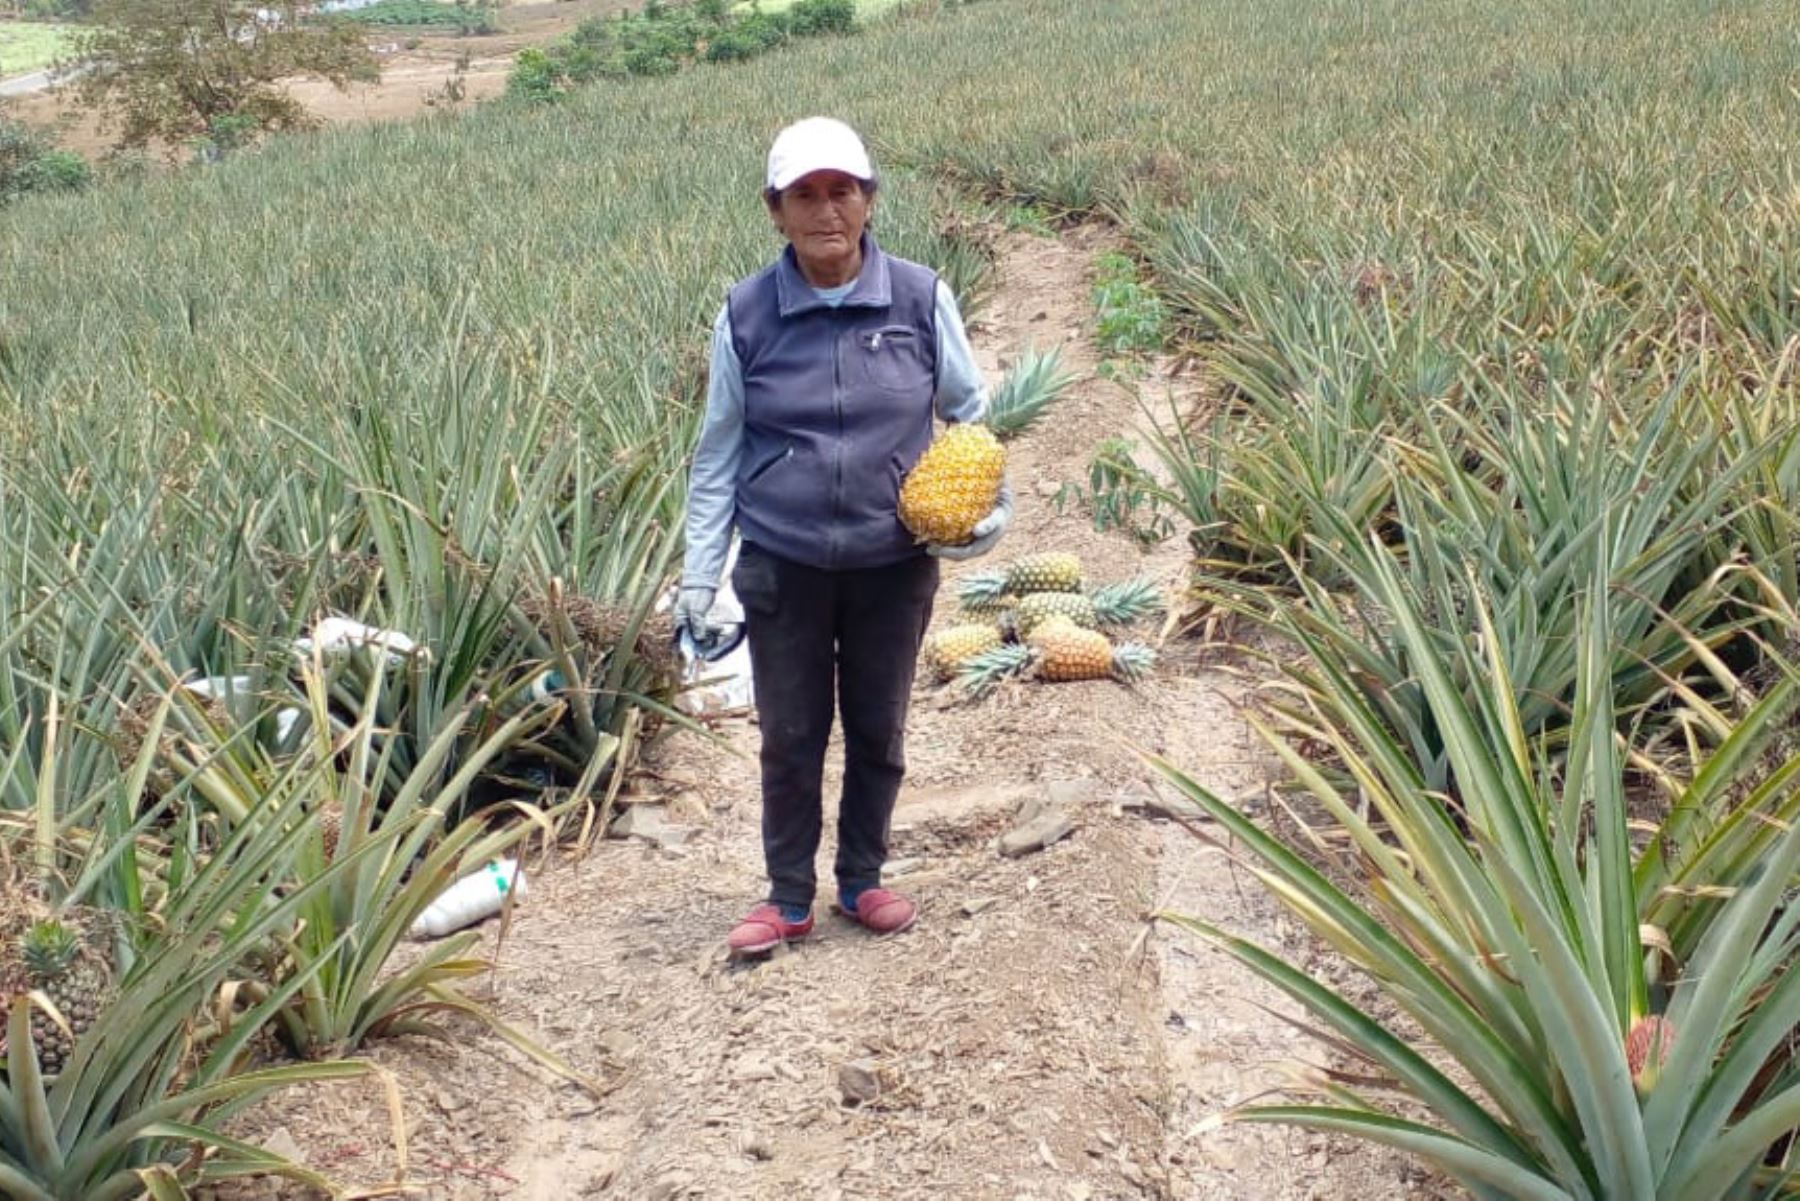 La piña golden MD2 es uno de los cultivos alternativos para zonas desérticas, como las tierras de Chavimochic. Foto: Cortesía Luis Puell